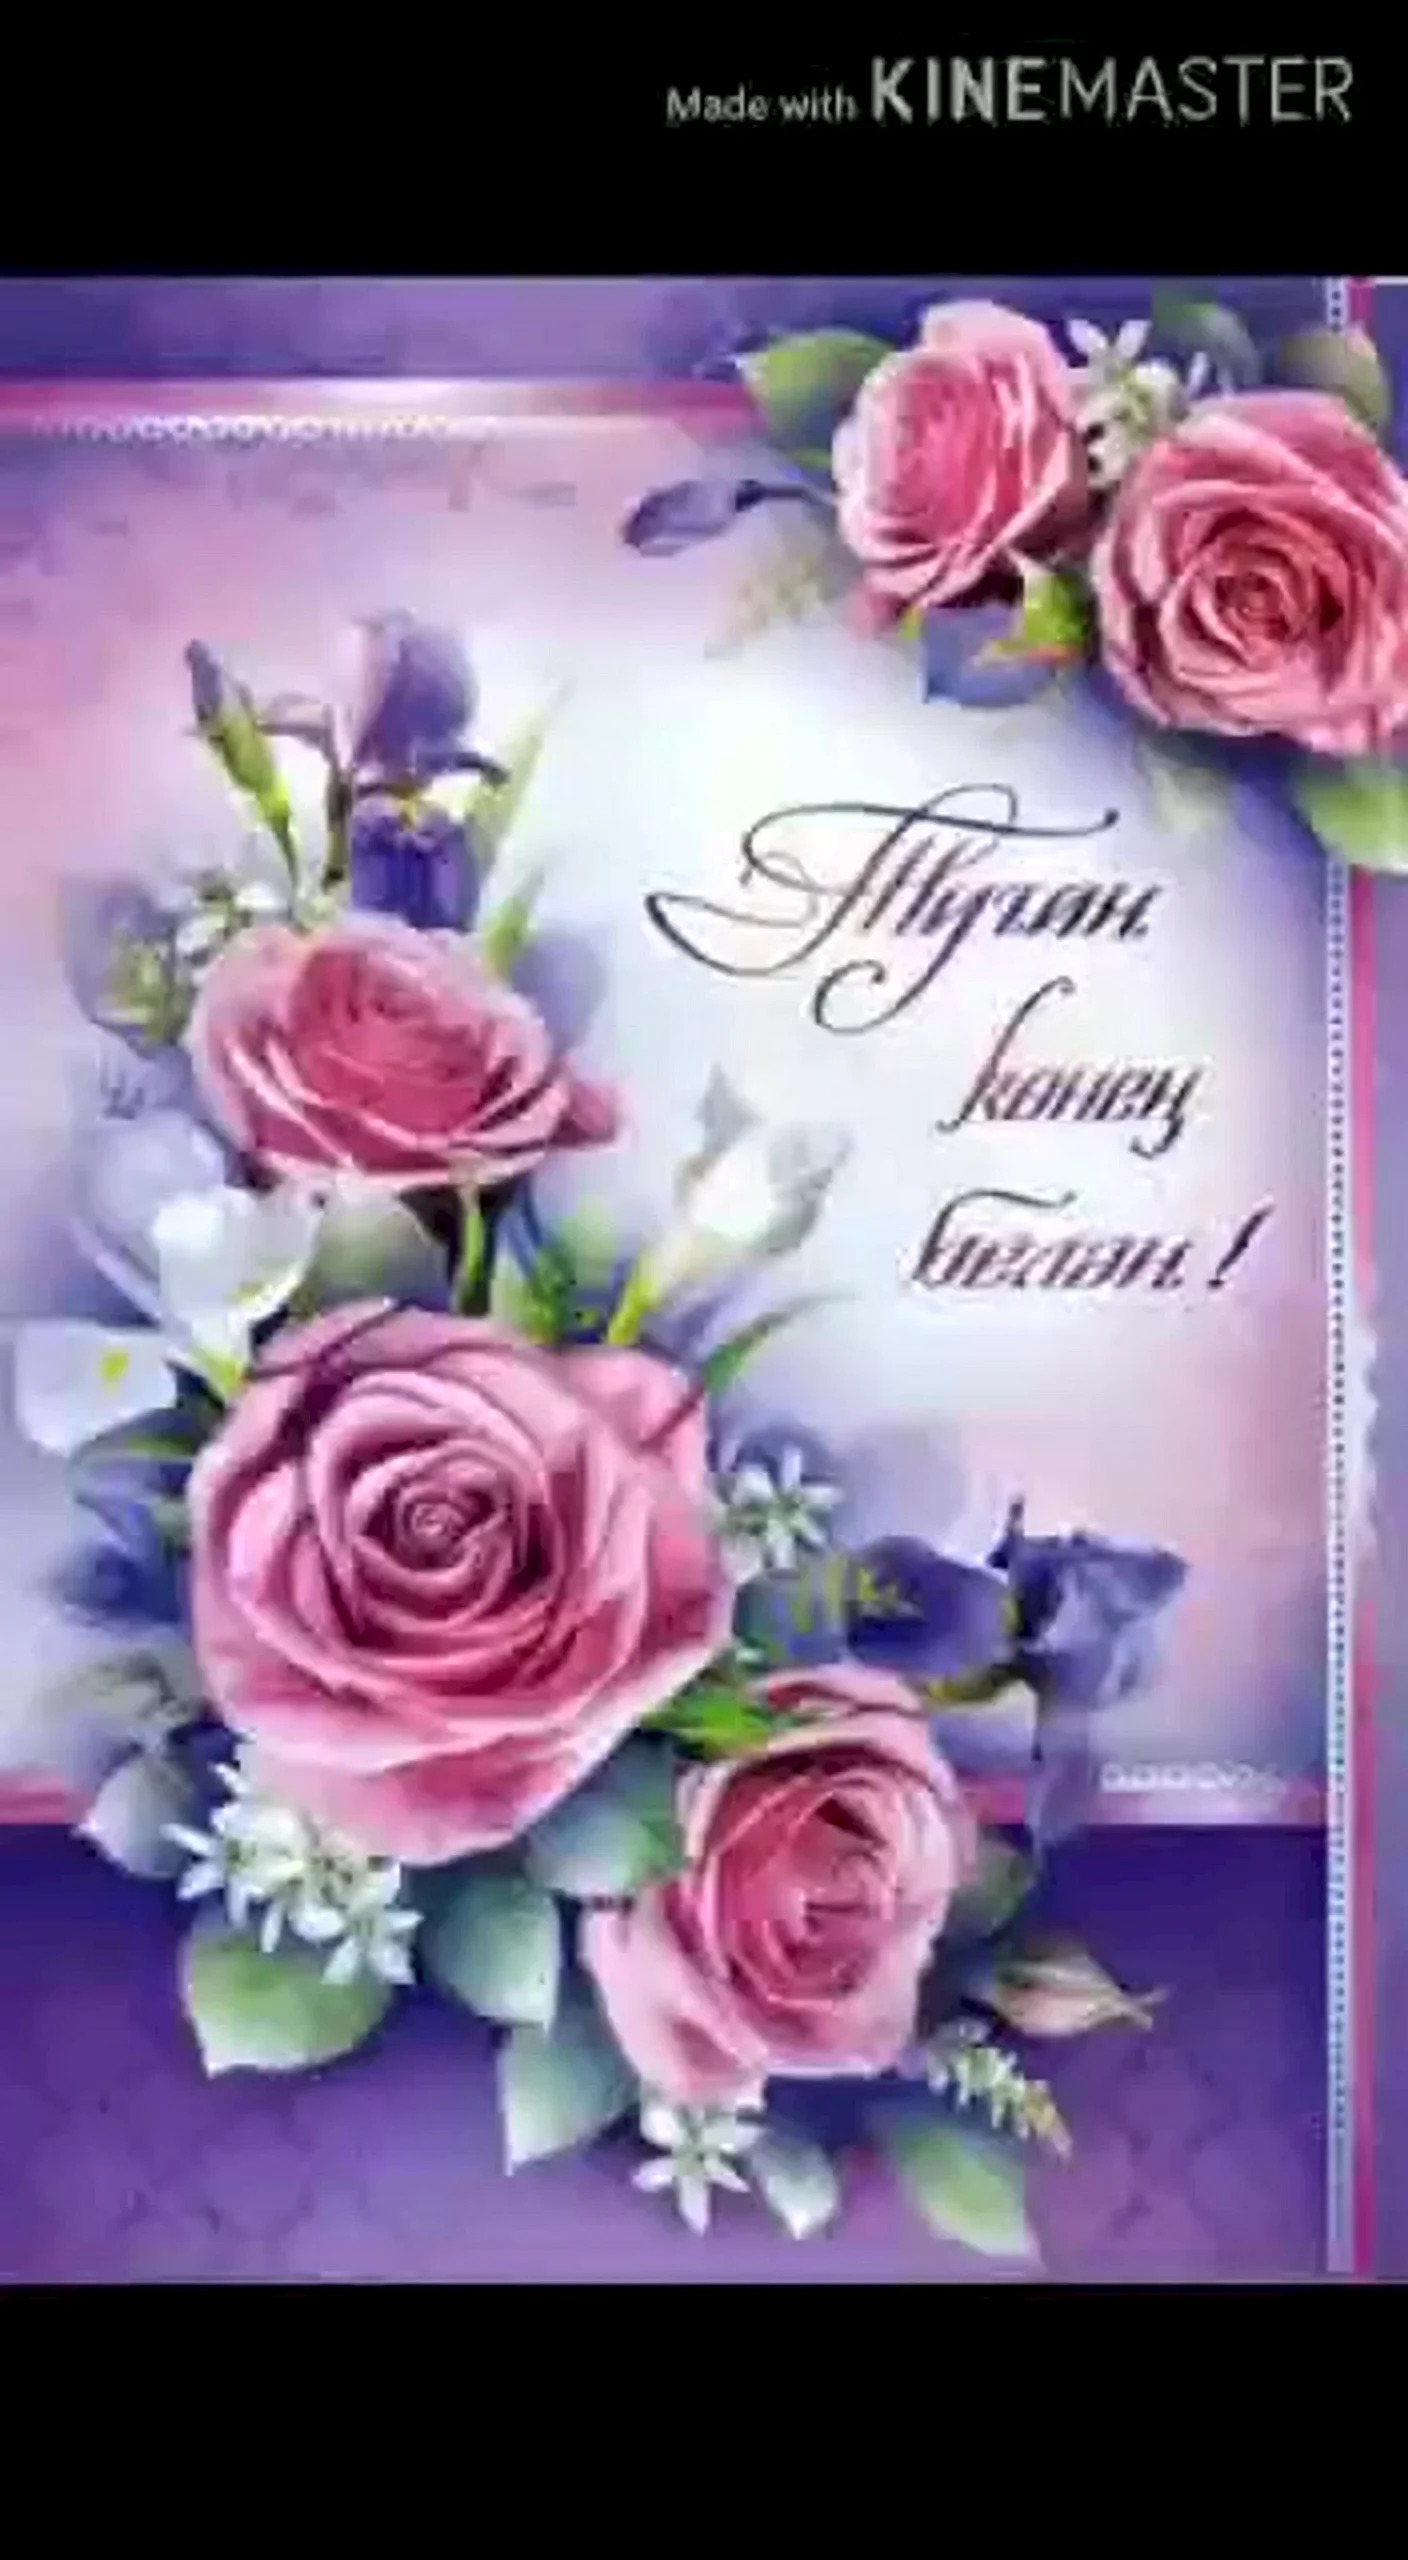 Поздравления с днём рождения на татарском языке